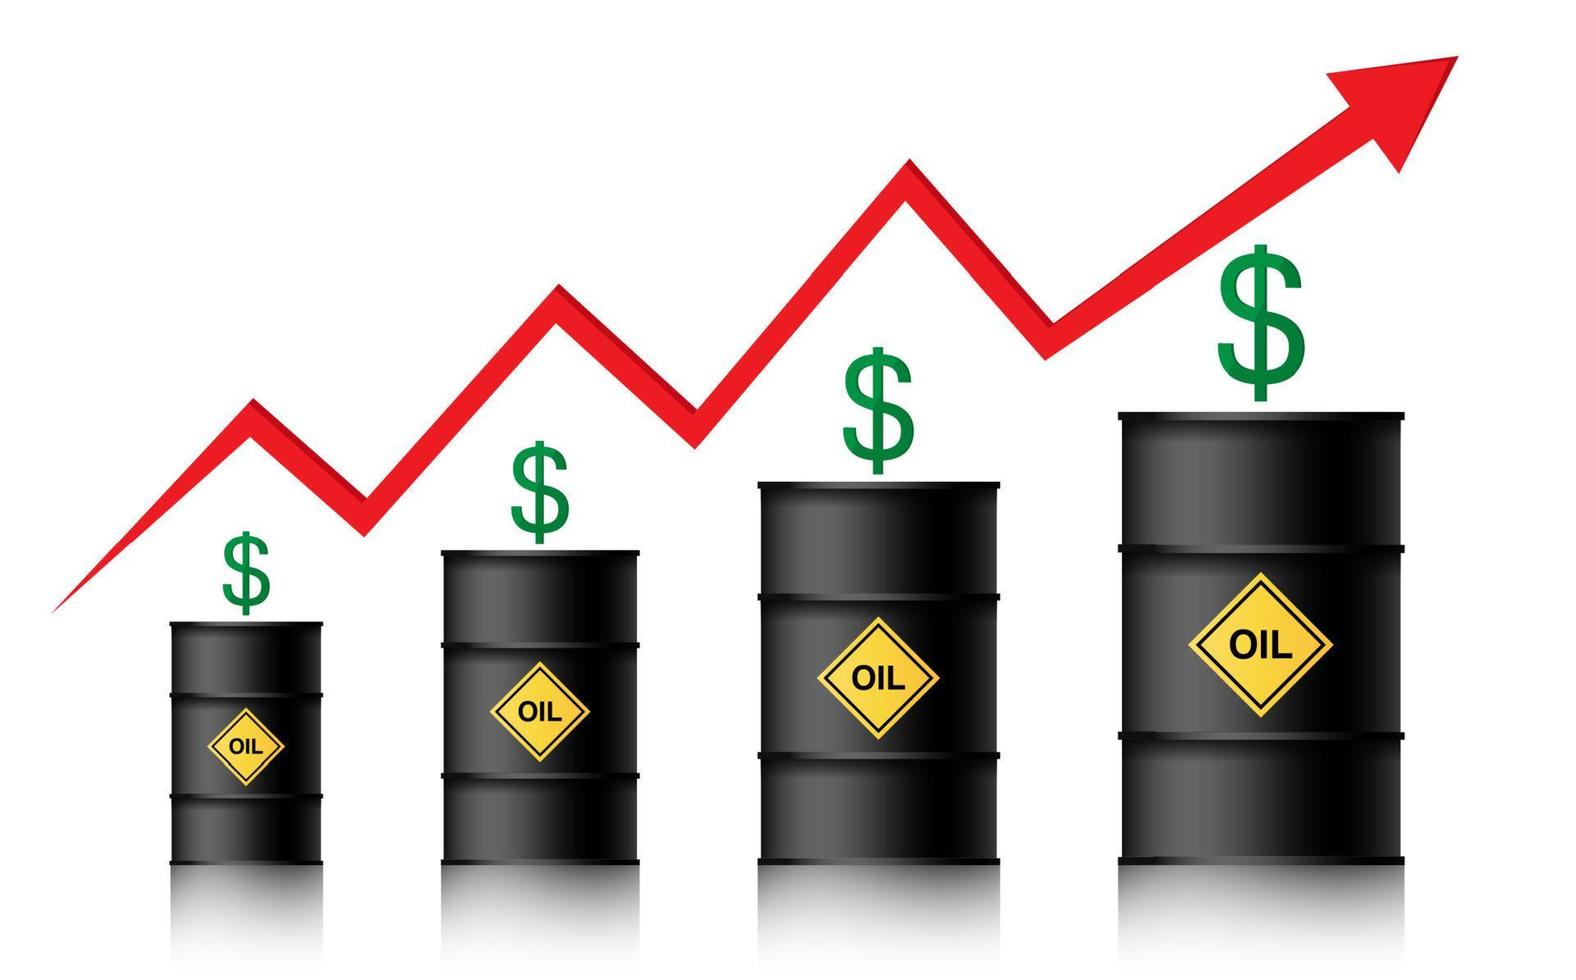 der Ölpreis steigt. Barrel Öl, Dollar und Infografiken mit einem roten Pfeil nach oben. Konzept der steigenden Rohölpreise, Vektorillustration lokalisiert auf weißem Hintergrund vektor